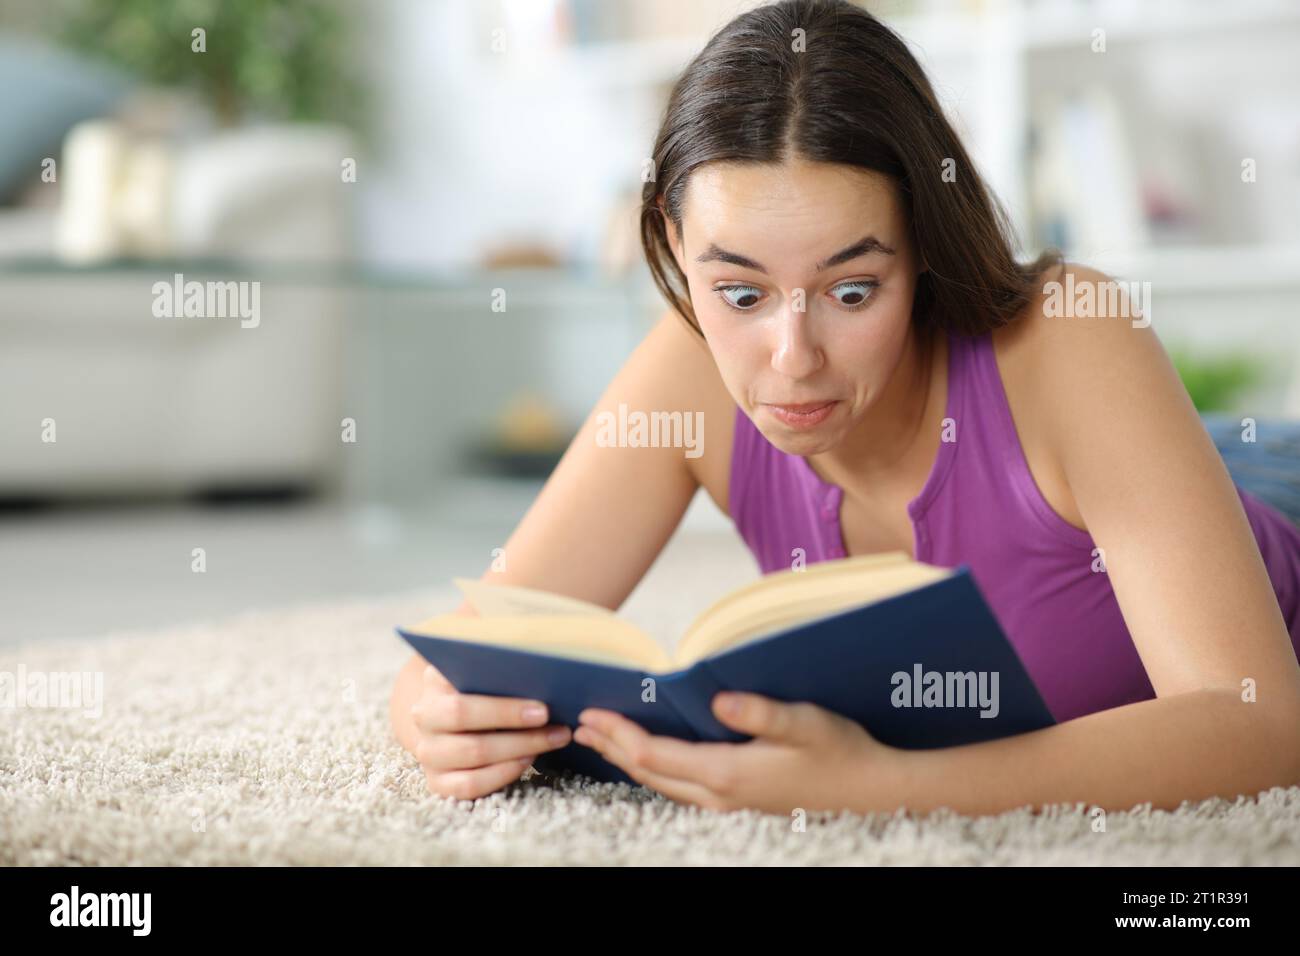 Überraschte Frau, die zu Hause ein Papierbuch liest, das auf einem Teppich liegt Stockfoto